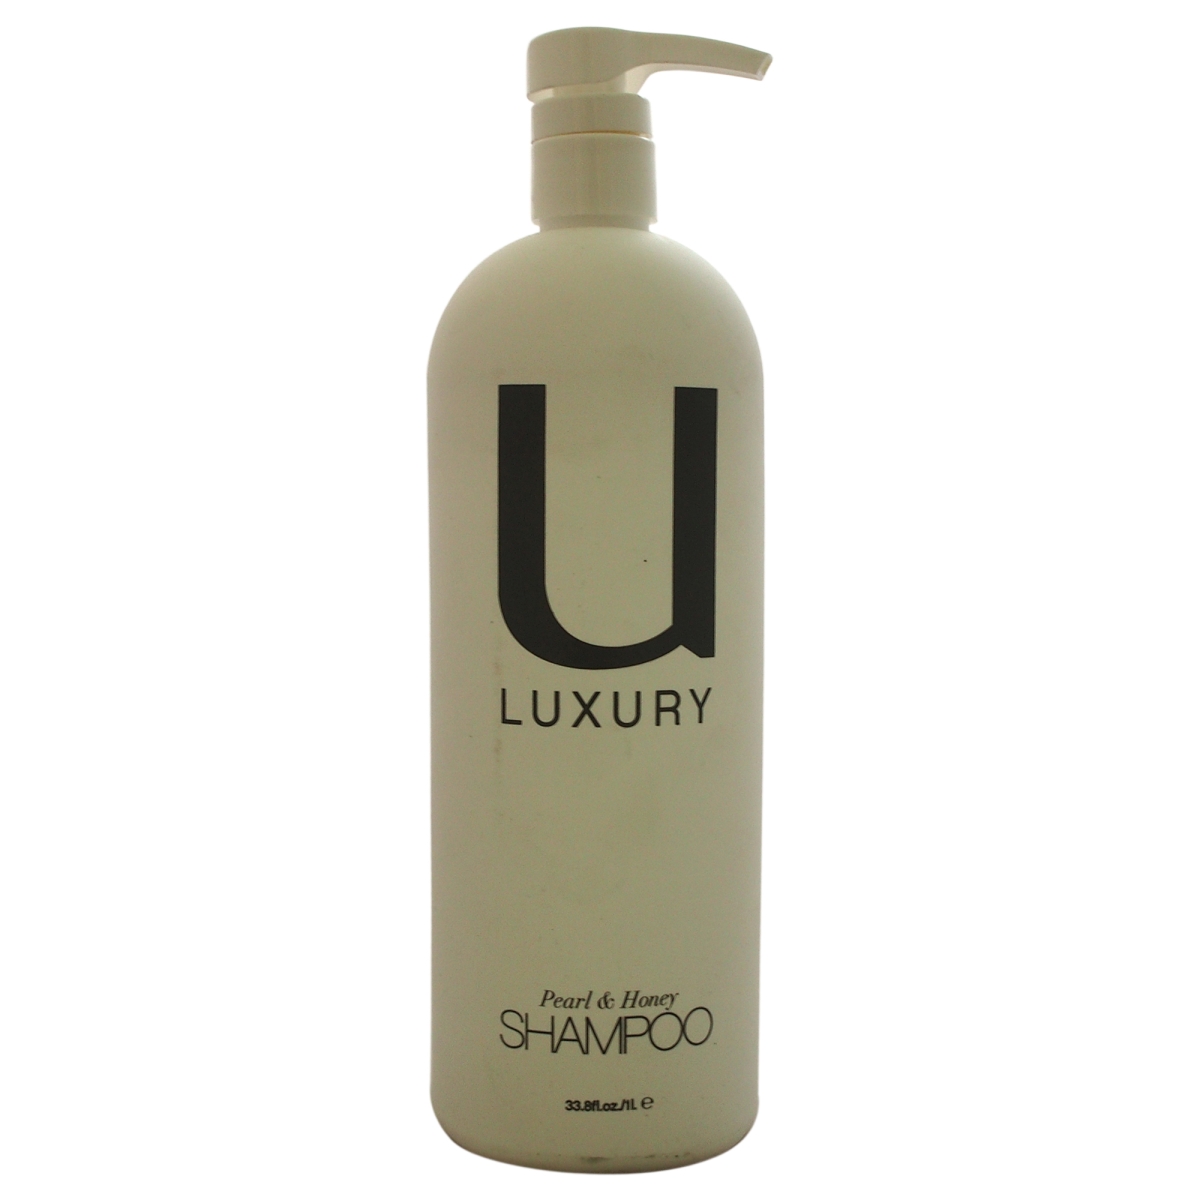 U-hc-9694 U 33.8 Oz Luxury Shampoo For Unisex